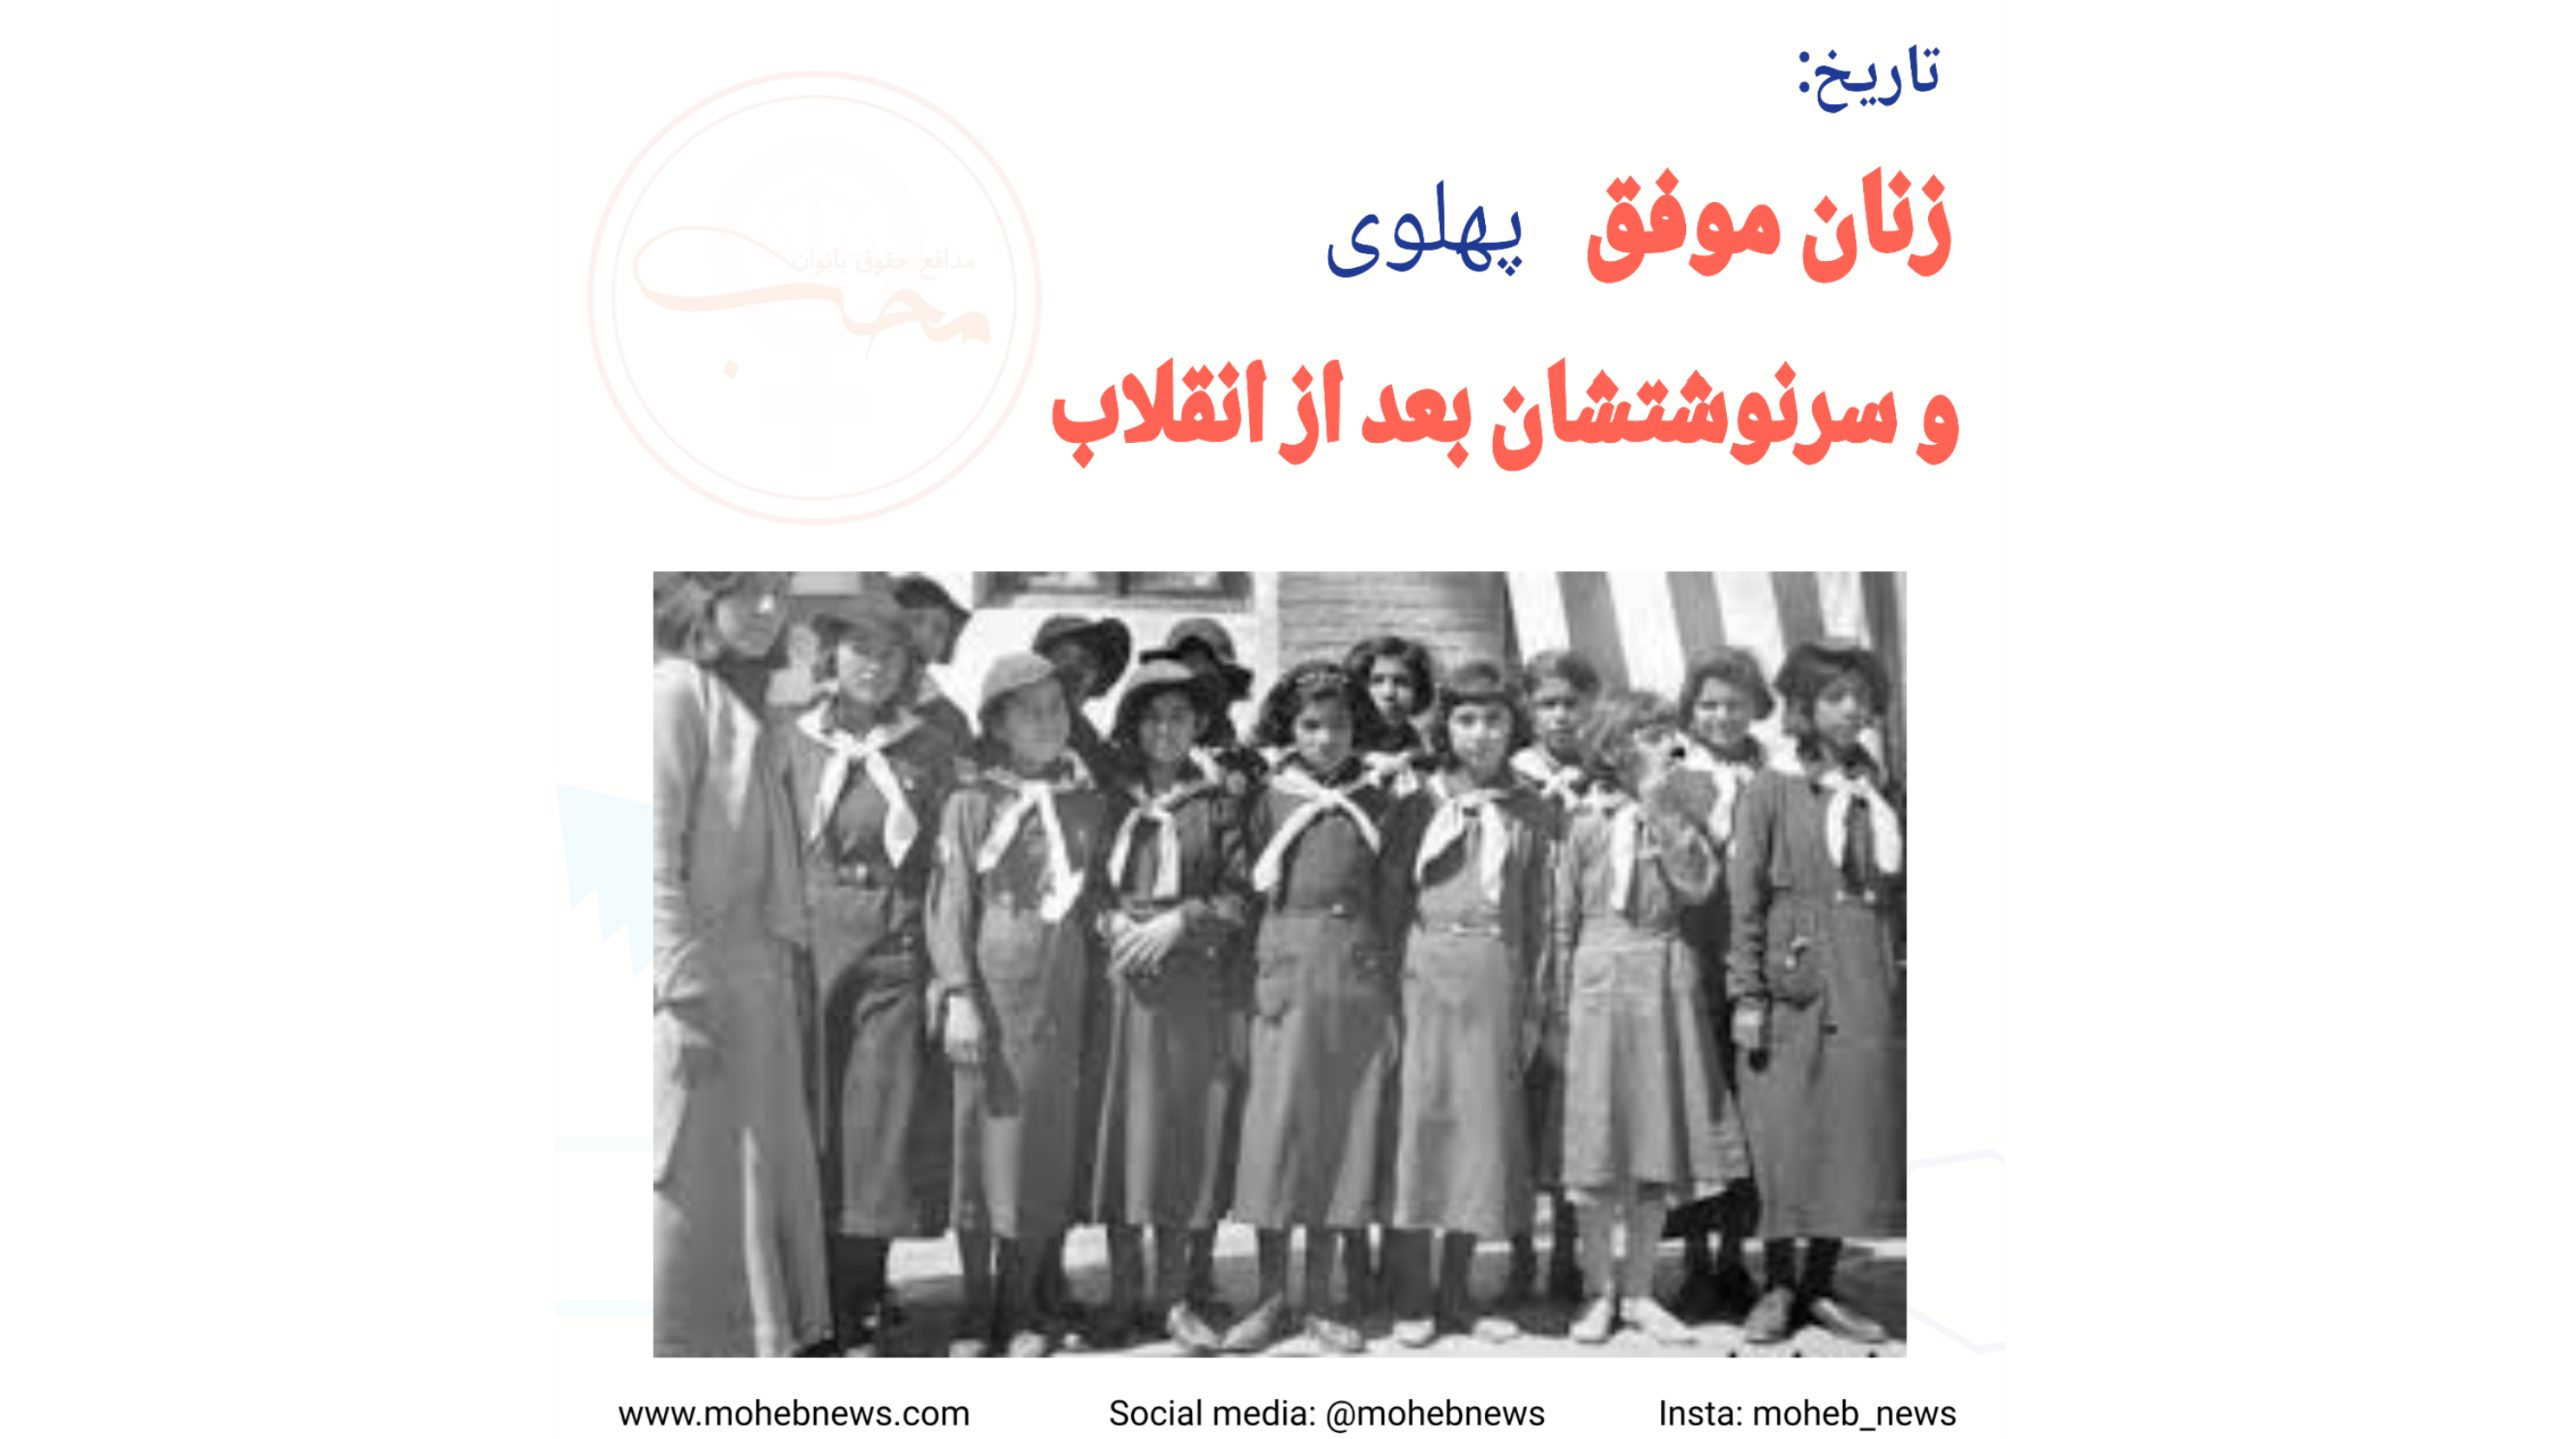 زنان موفق دوران پهلوی و سرنوشتشان بعد از انقلاب | محب نیوز